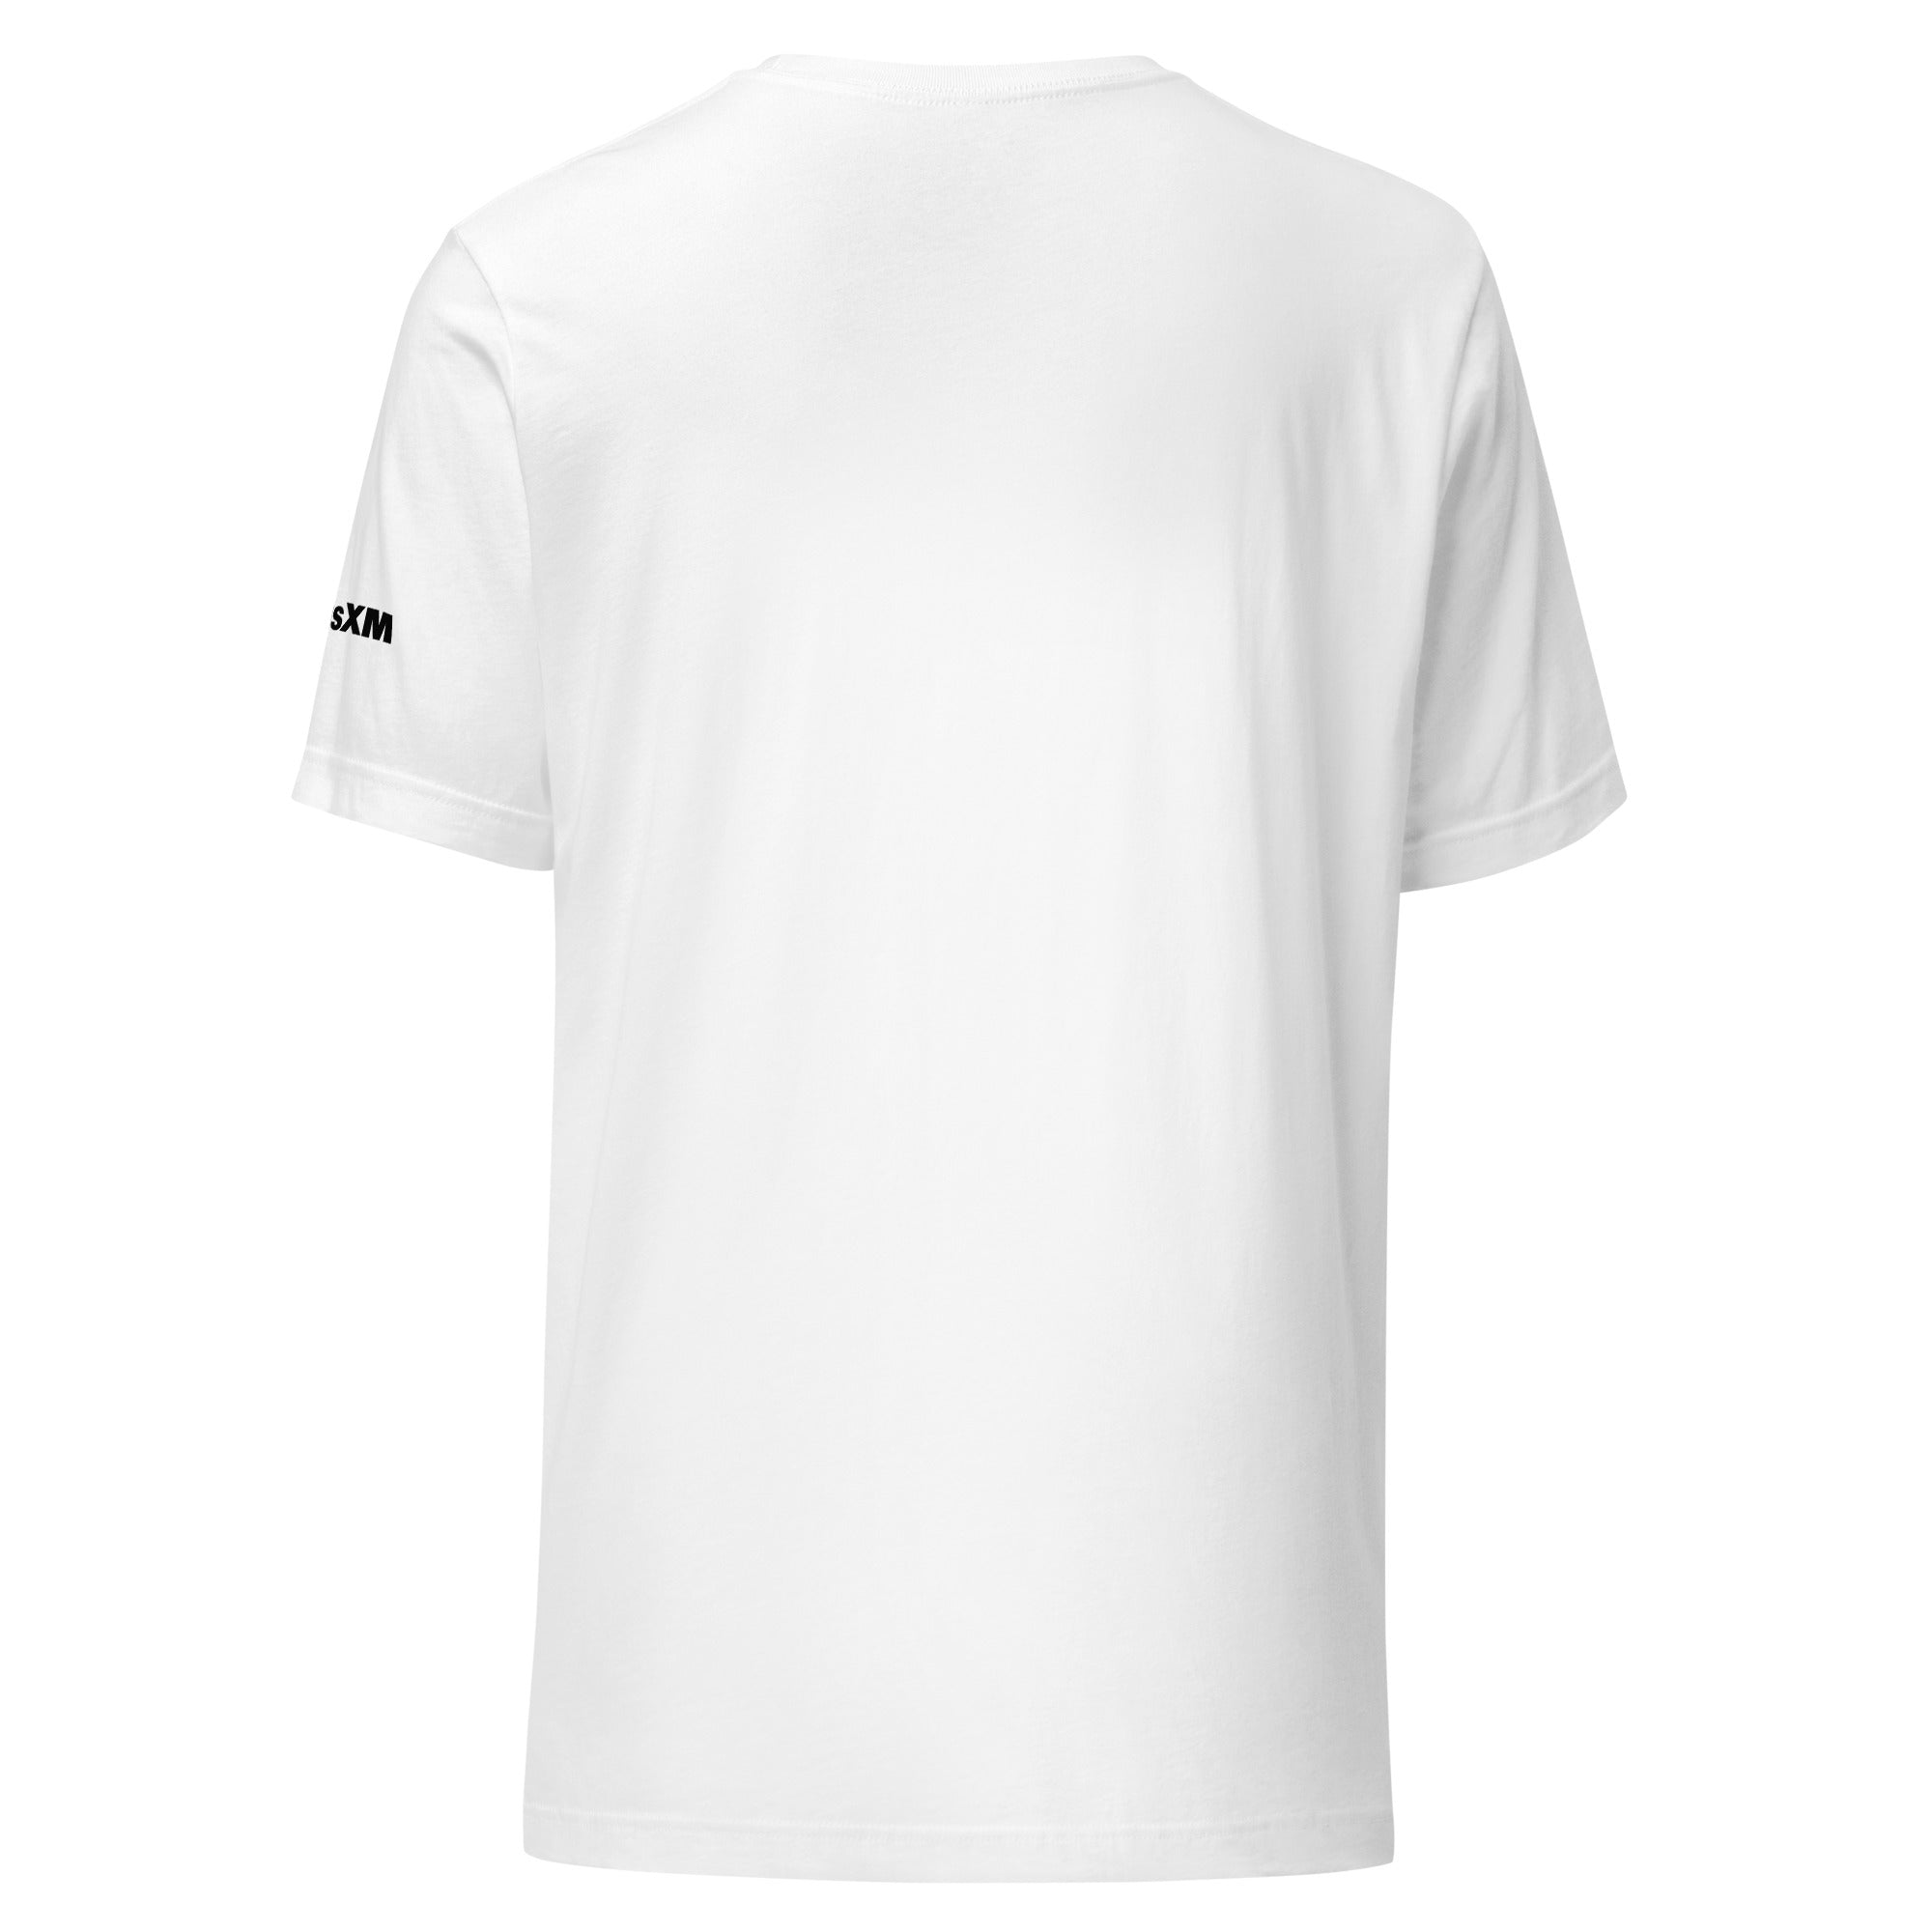 Luna: T-shirt (White)